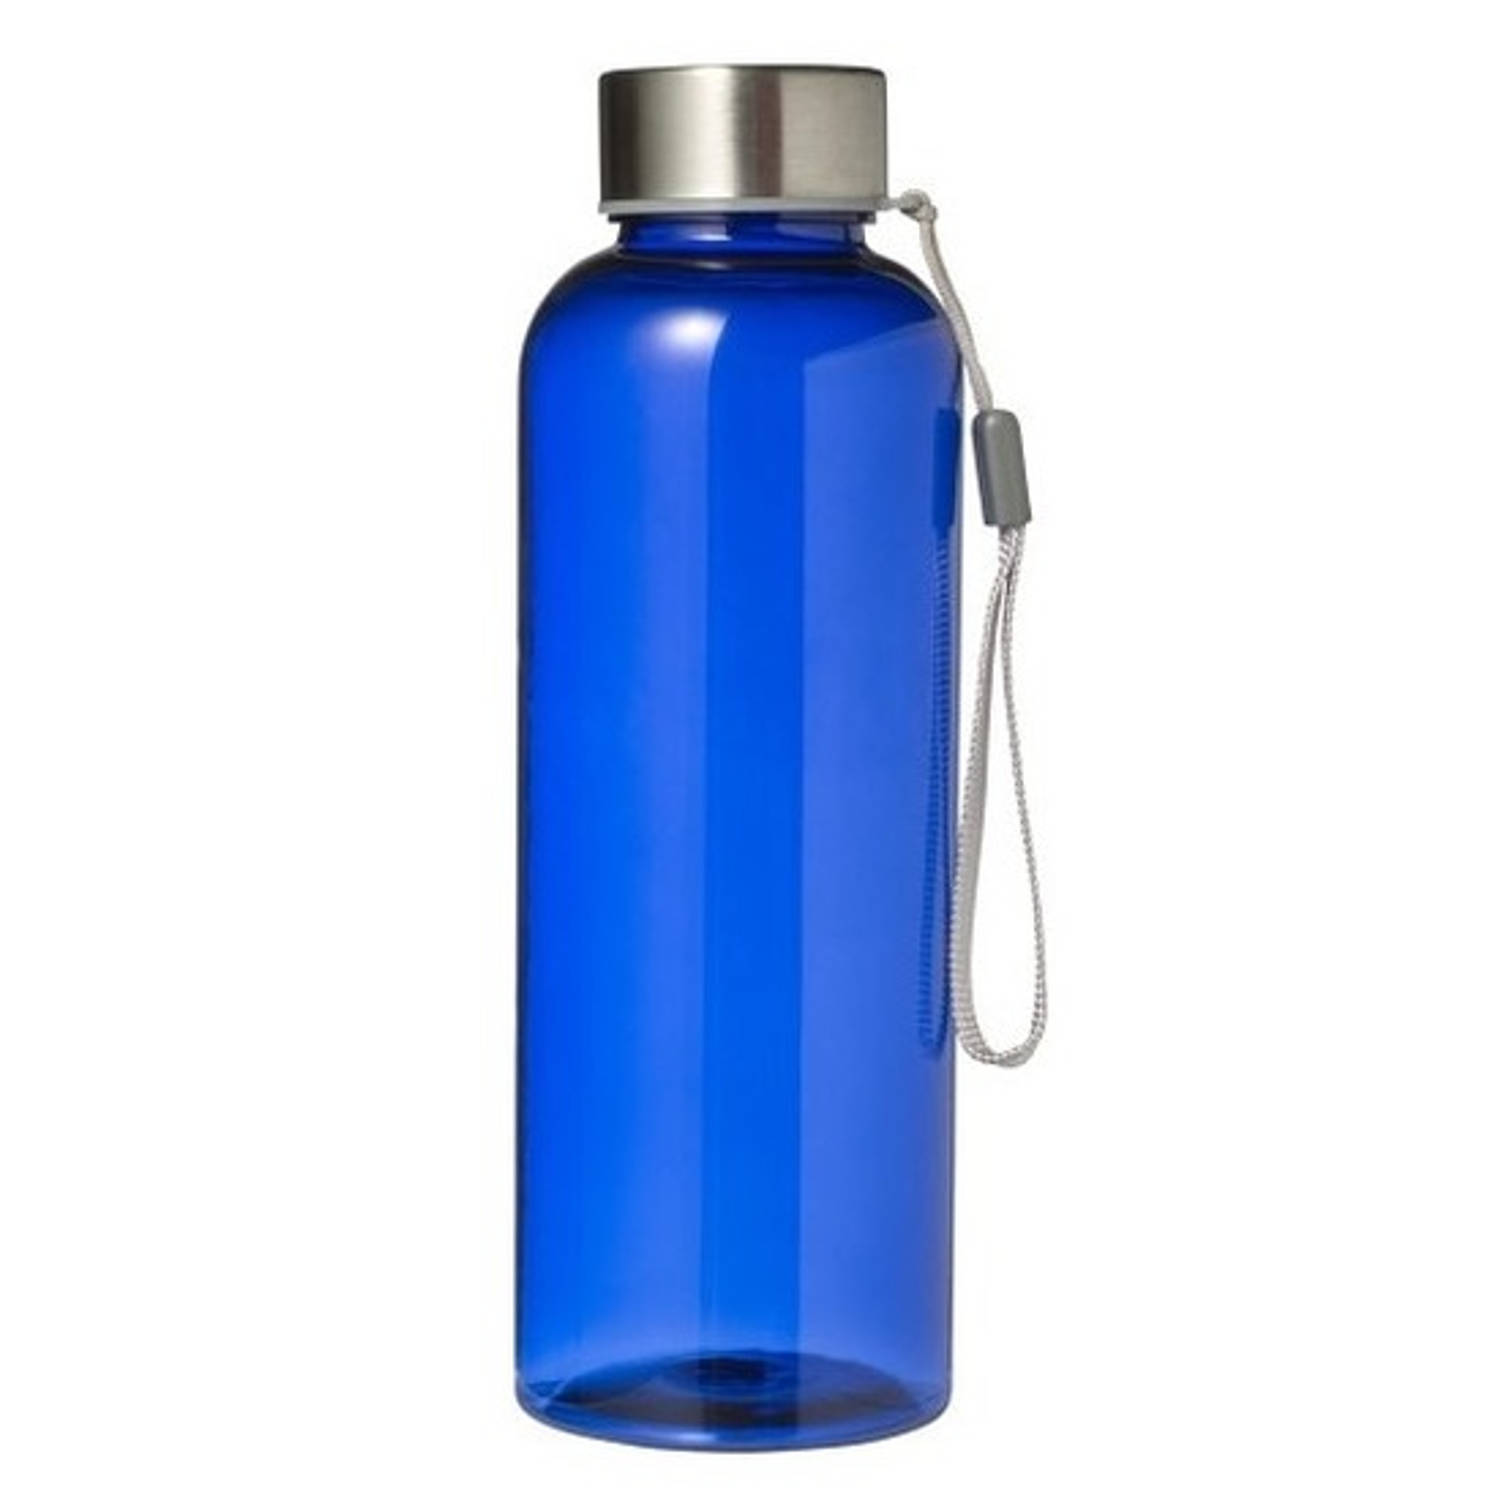 Beperken Theoretisch Soepel Lekvrije drinkfles/waterfles 500 ml blauw - Drinkflessen | Blokker